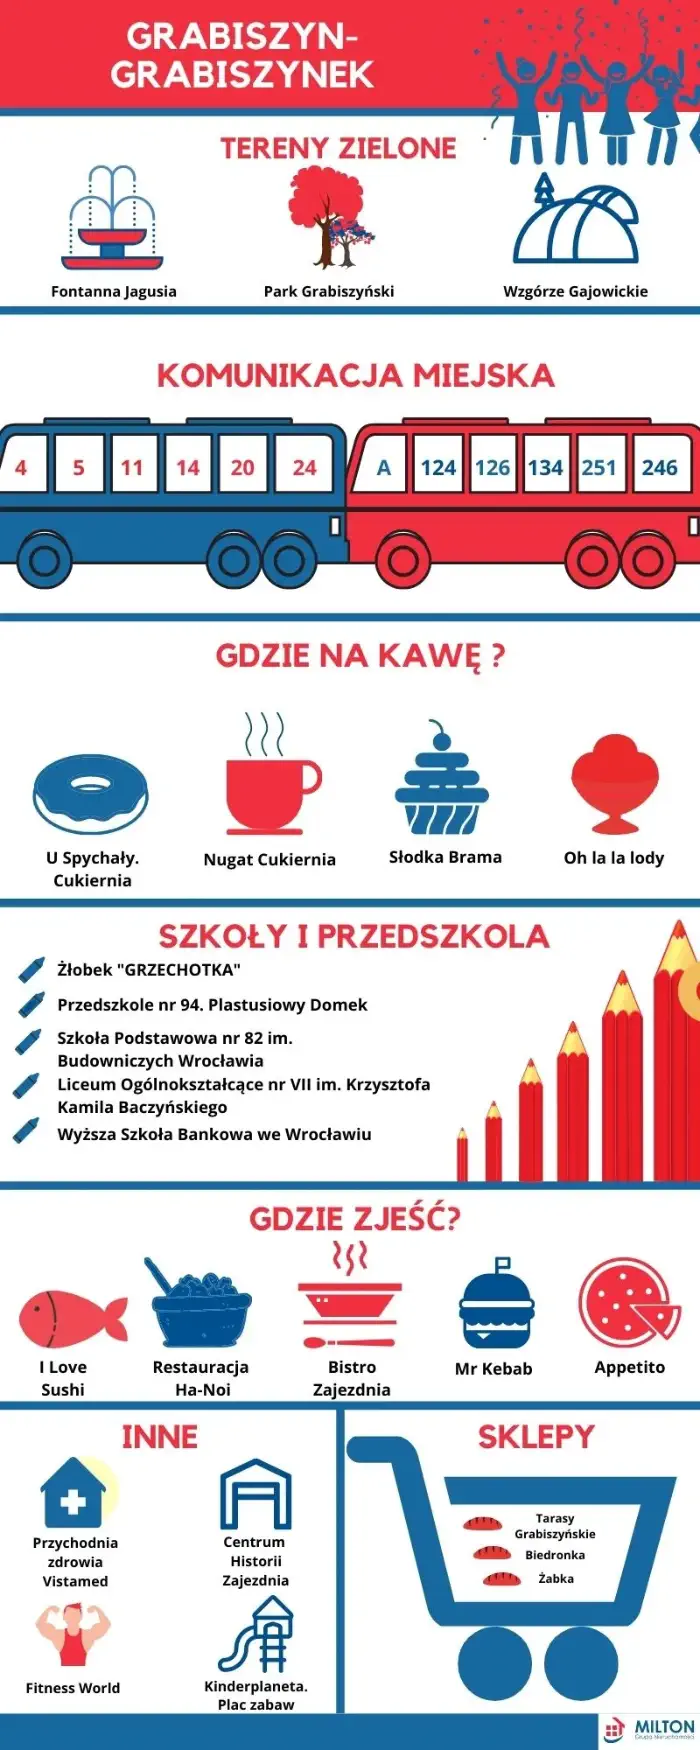 Plakat reklamujący atrakcje turystyczne i zalety osiedla Grabiszynek we Wrocławiu. Zaprojektowany w kolorach niebieskim i czerwonym.